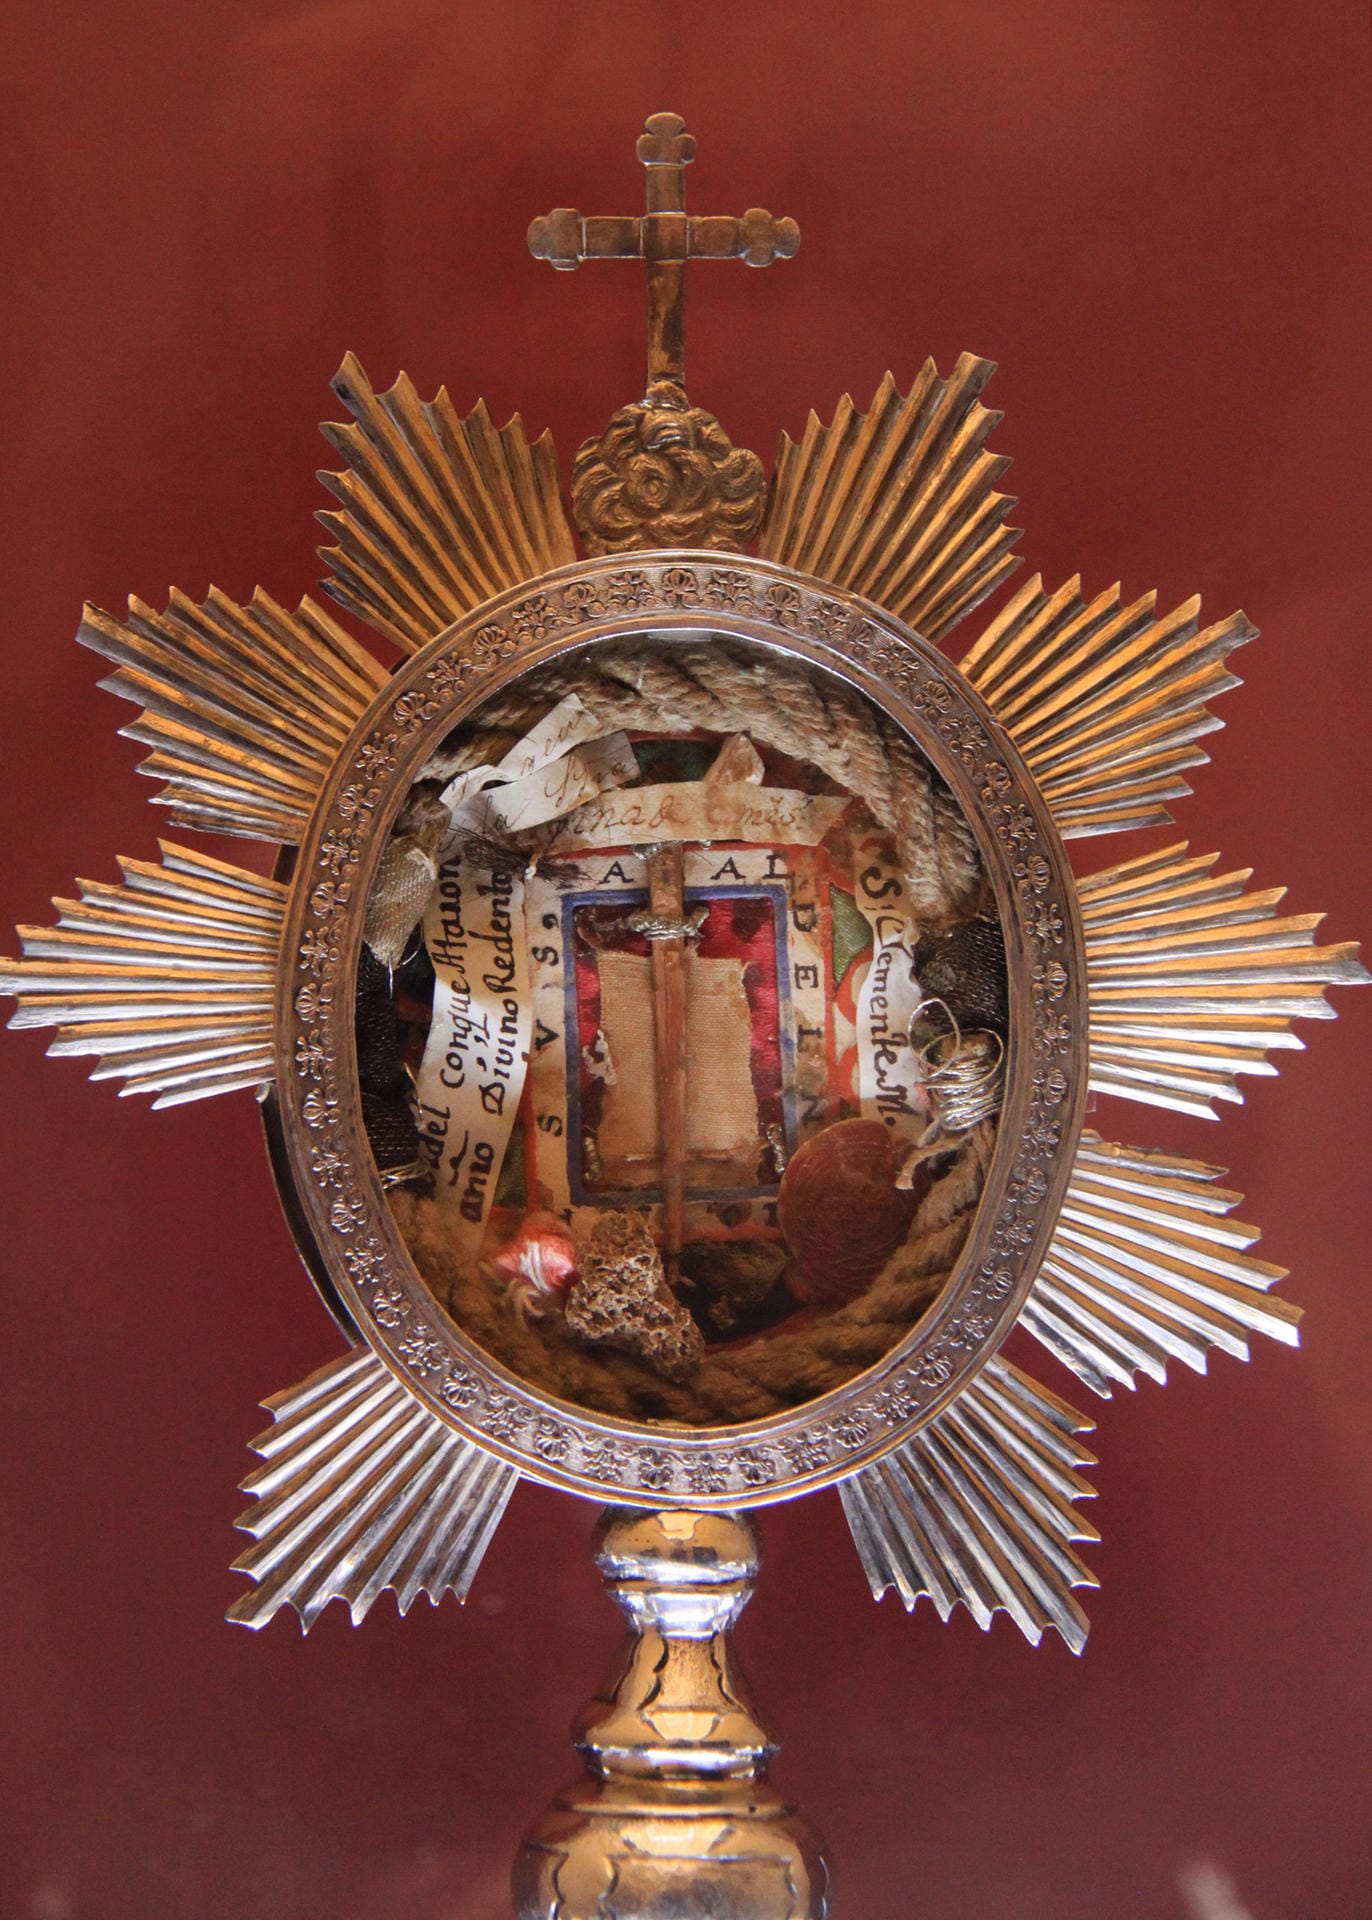 Ein Dorn von Jesus Dornenkrone und andere Reliquien gibt es im Kloster de la Encarnación in Mula zu sehen.